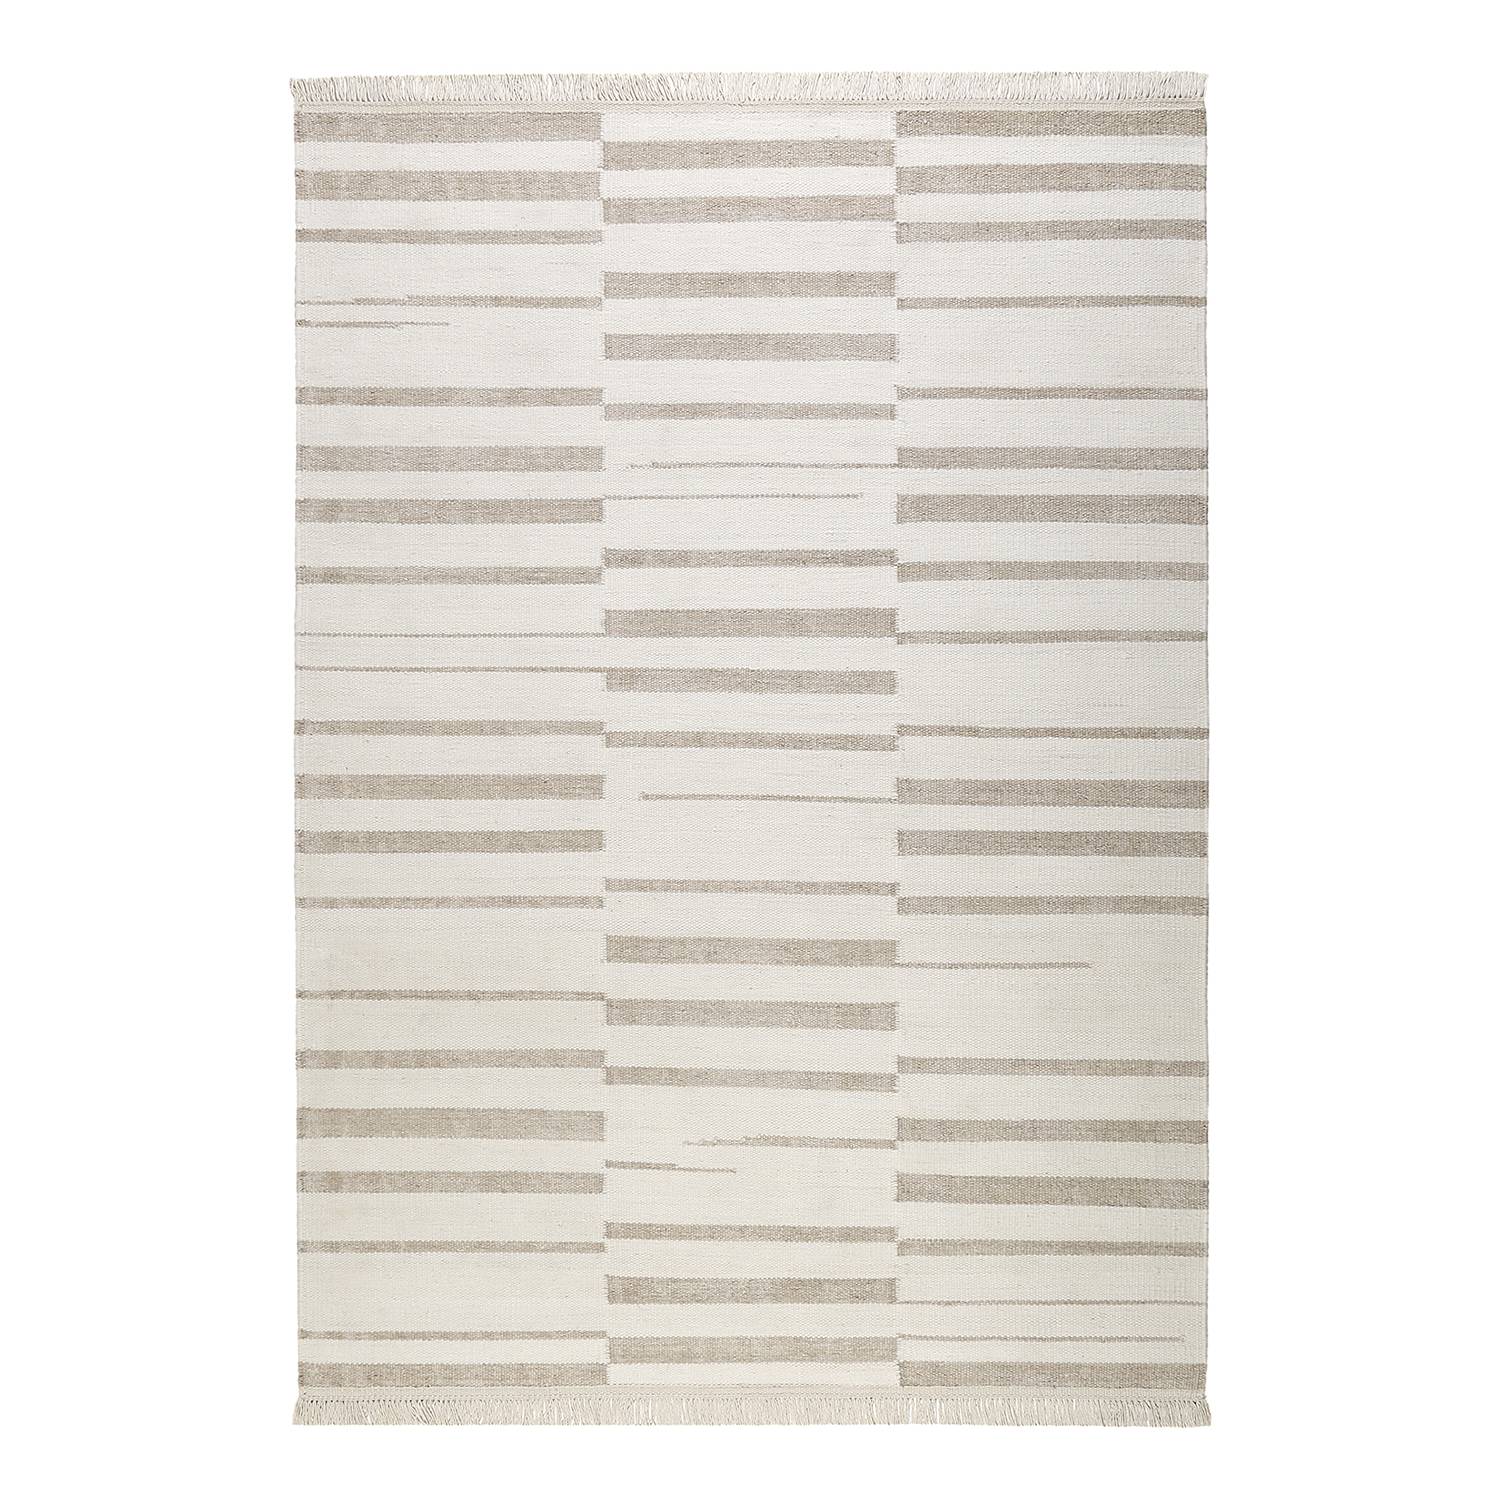 Teppich Skid Marks (handgewebt) - Mischgewebe - Creme / Beige - 130 x 190 cm, carpets&co